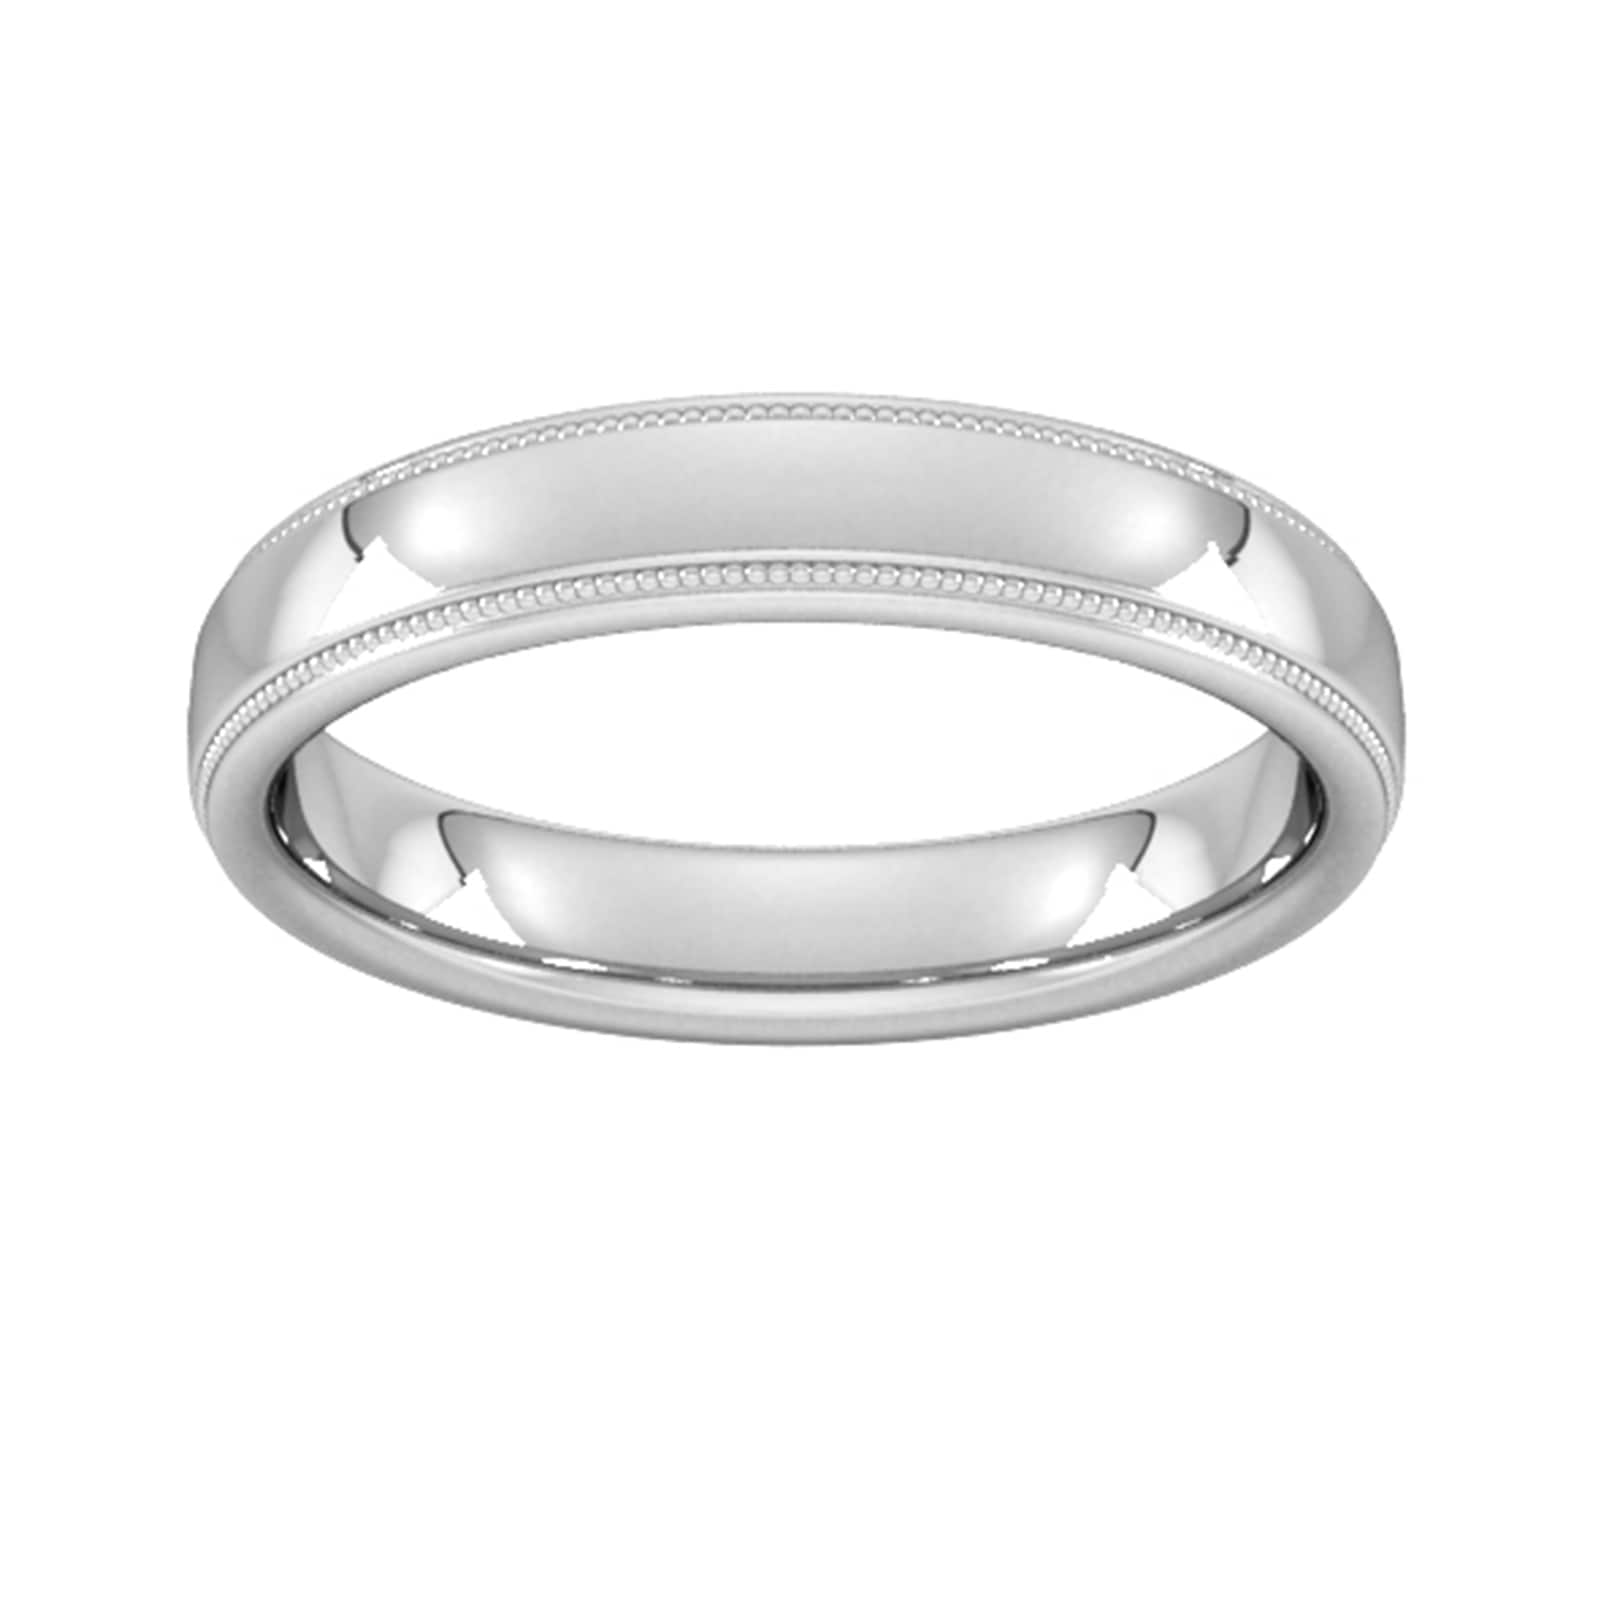 4mm D Shape Standard Milgrain Edge Wedding Ring In 9 Carat White Gold - Ring Size I